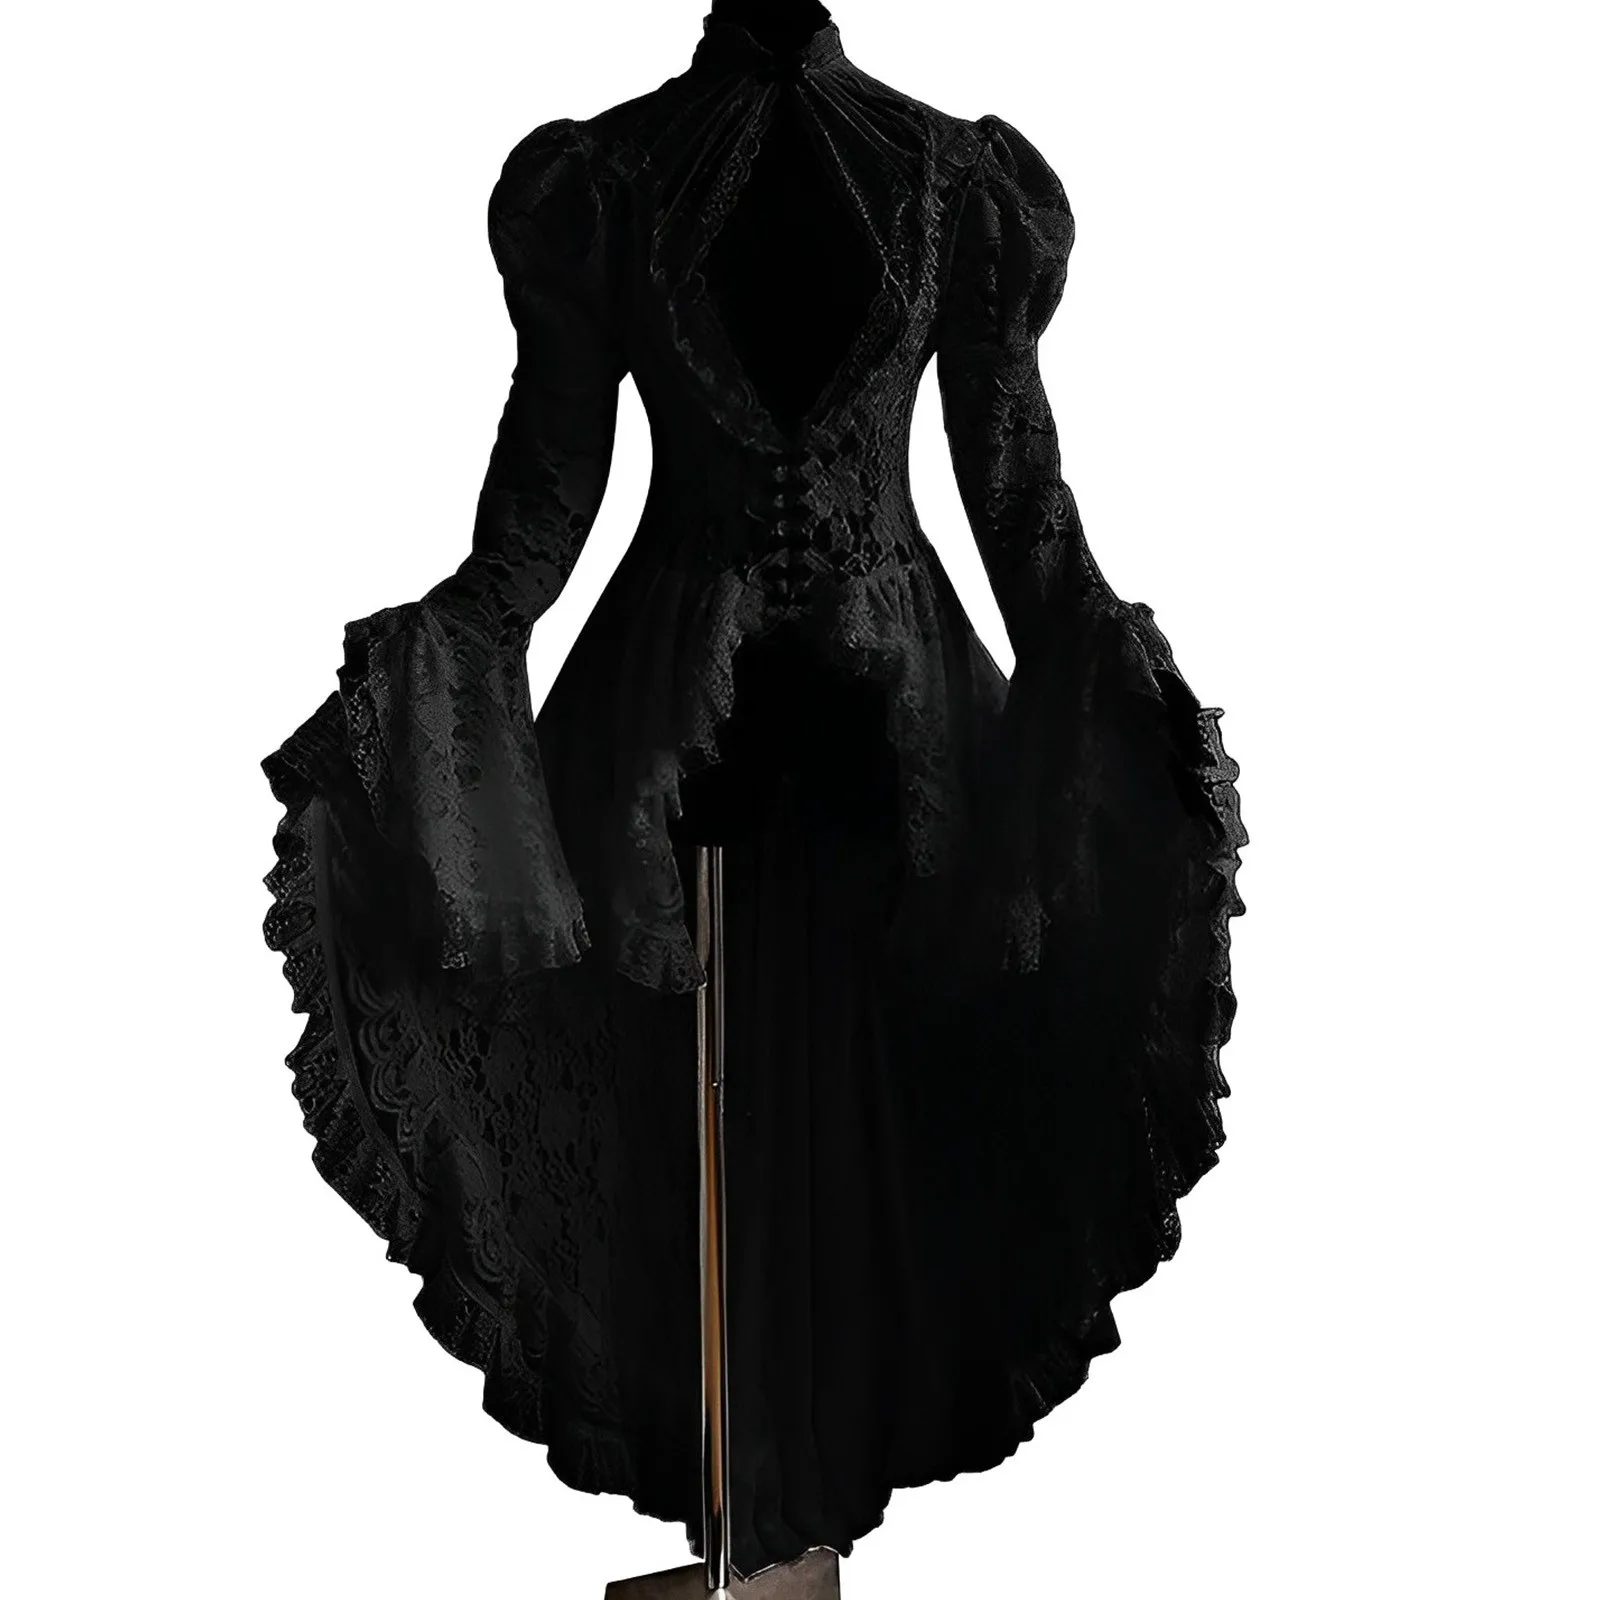 

Винтажное кружевное лоскутное платье с высокой горловиной и рукавами-колокольчиками облегающее Прозрачное платье для маскарада идеально подходит для косплея для мужчин